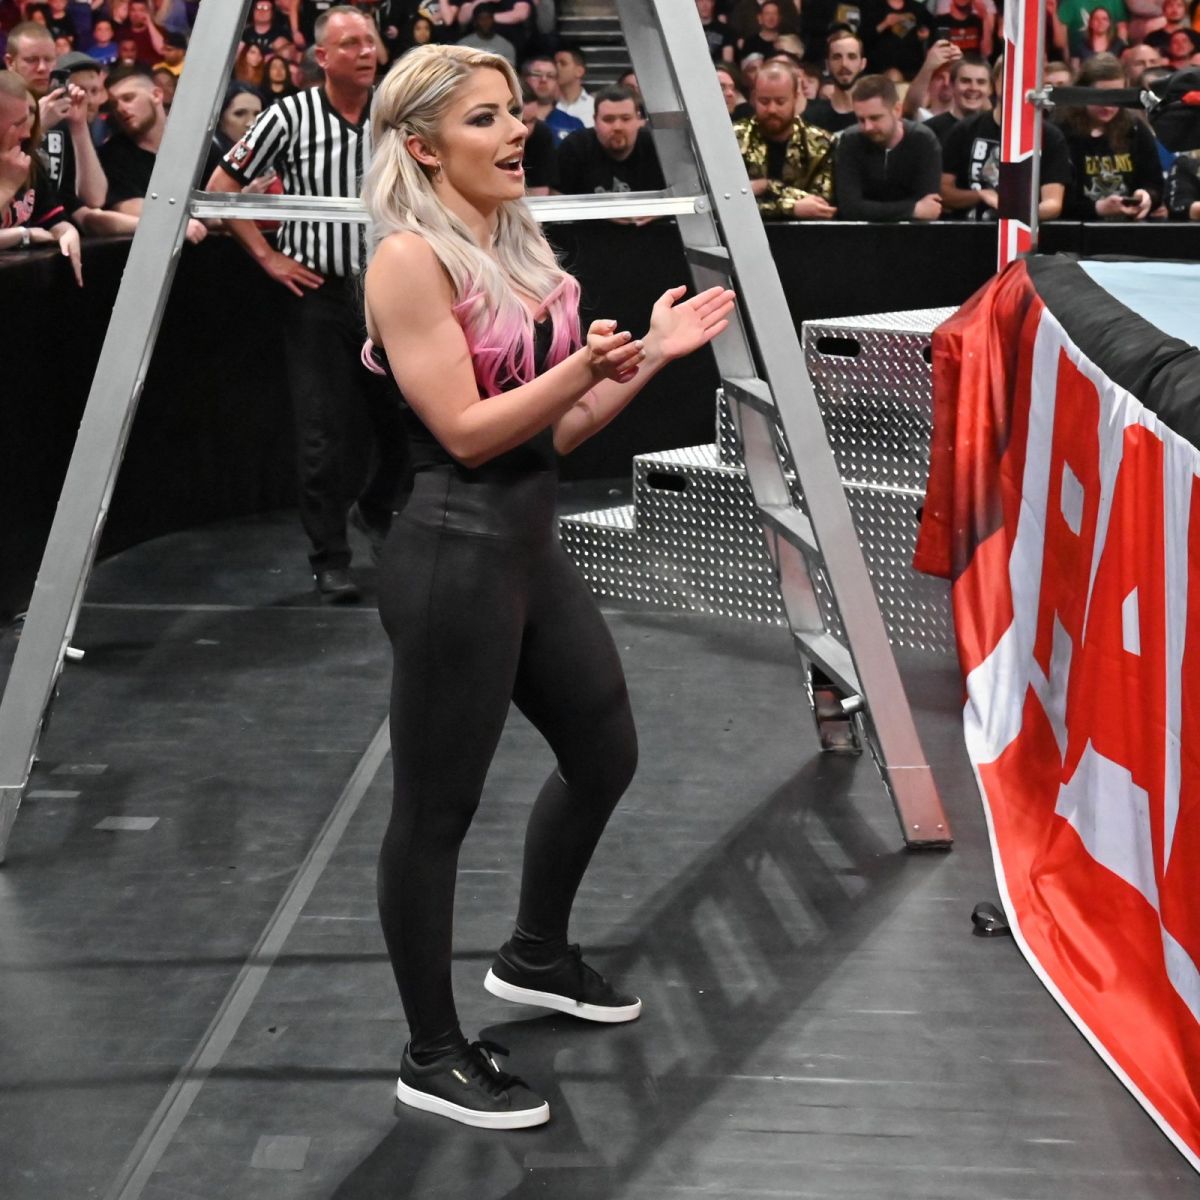 ALEXA BLISS - WWE Raw in London 05/13/2019.